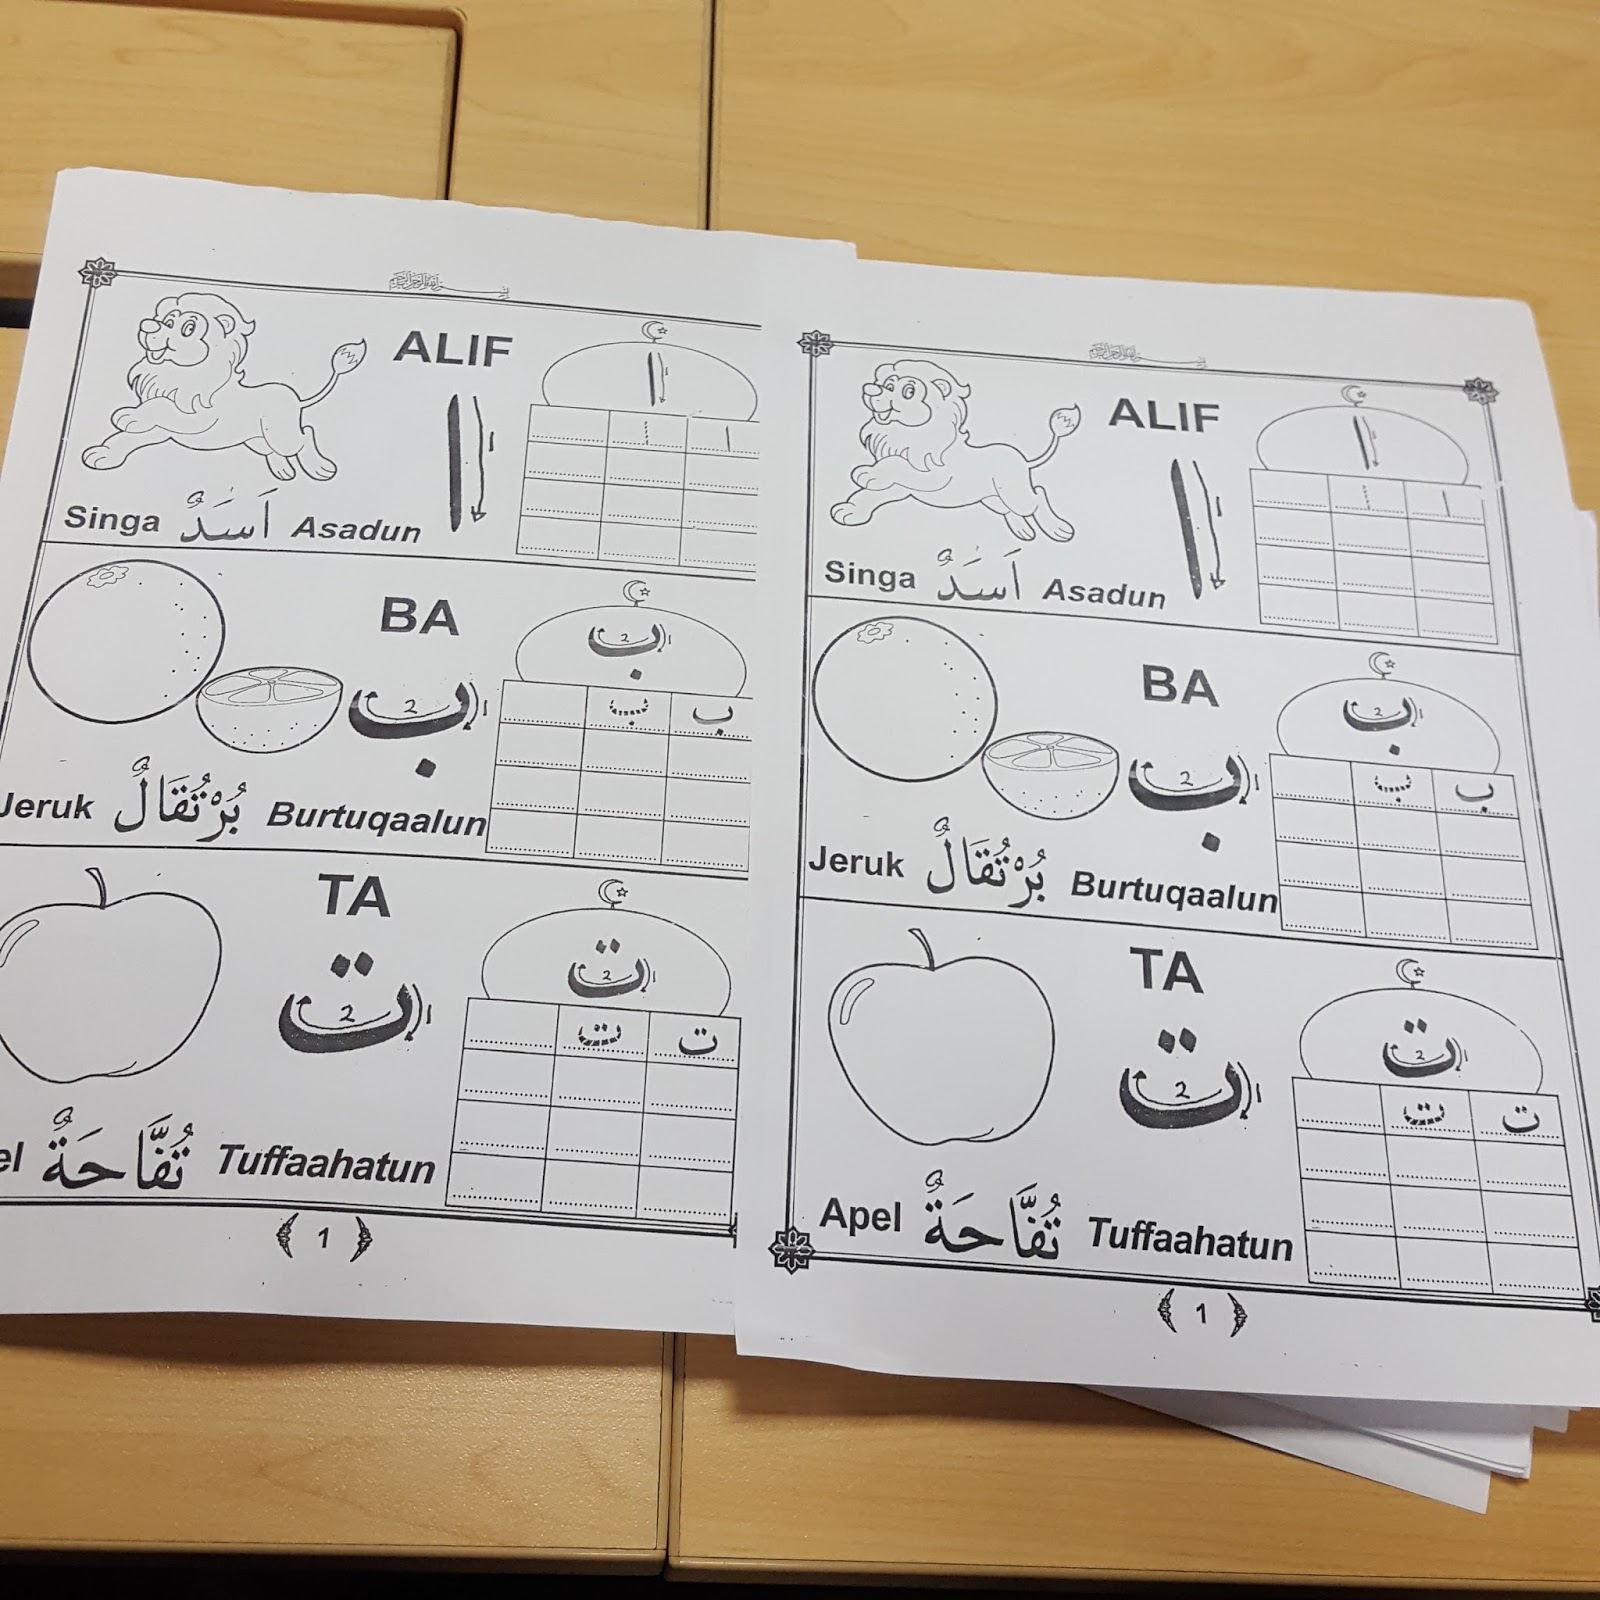 tugas yang diberikan oleh guru dilanjutkan dengan mengerjakan tugas yang kelompok kami berikan yaitu mengerjakan atau menulis huruf huruf hijaiyah